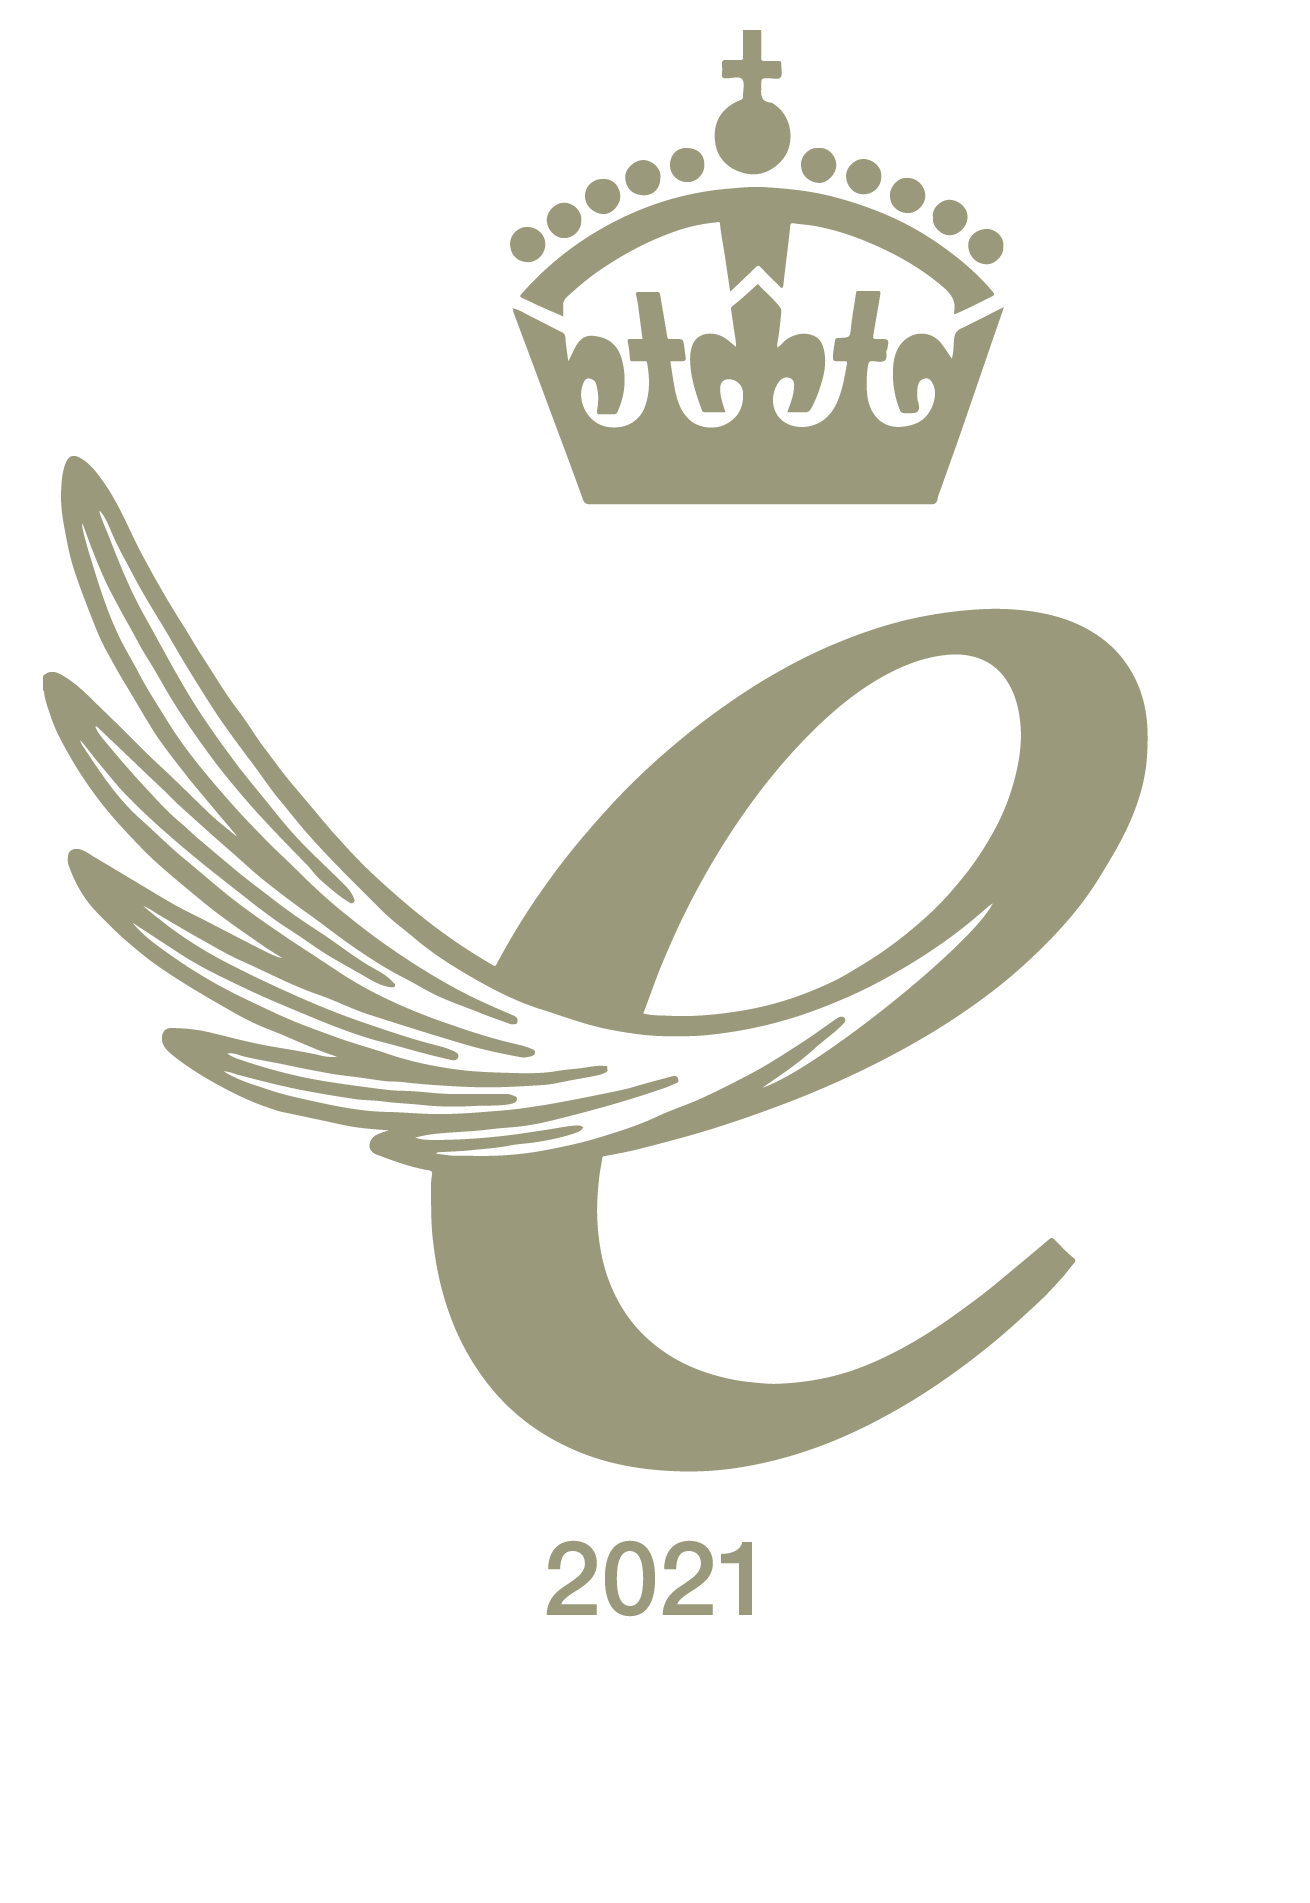 QA logo2021 digital  gold